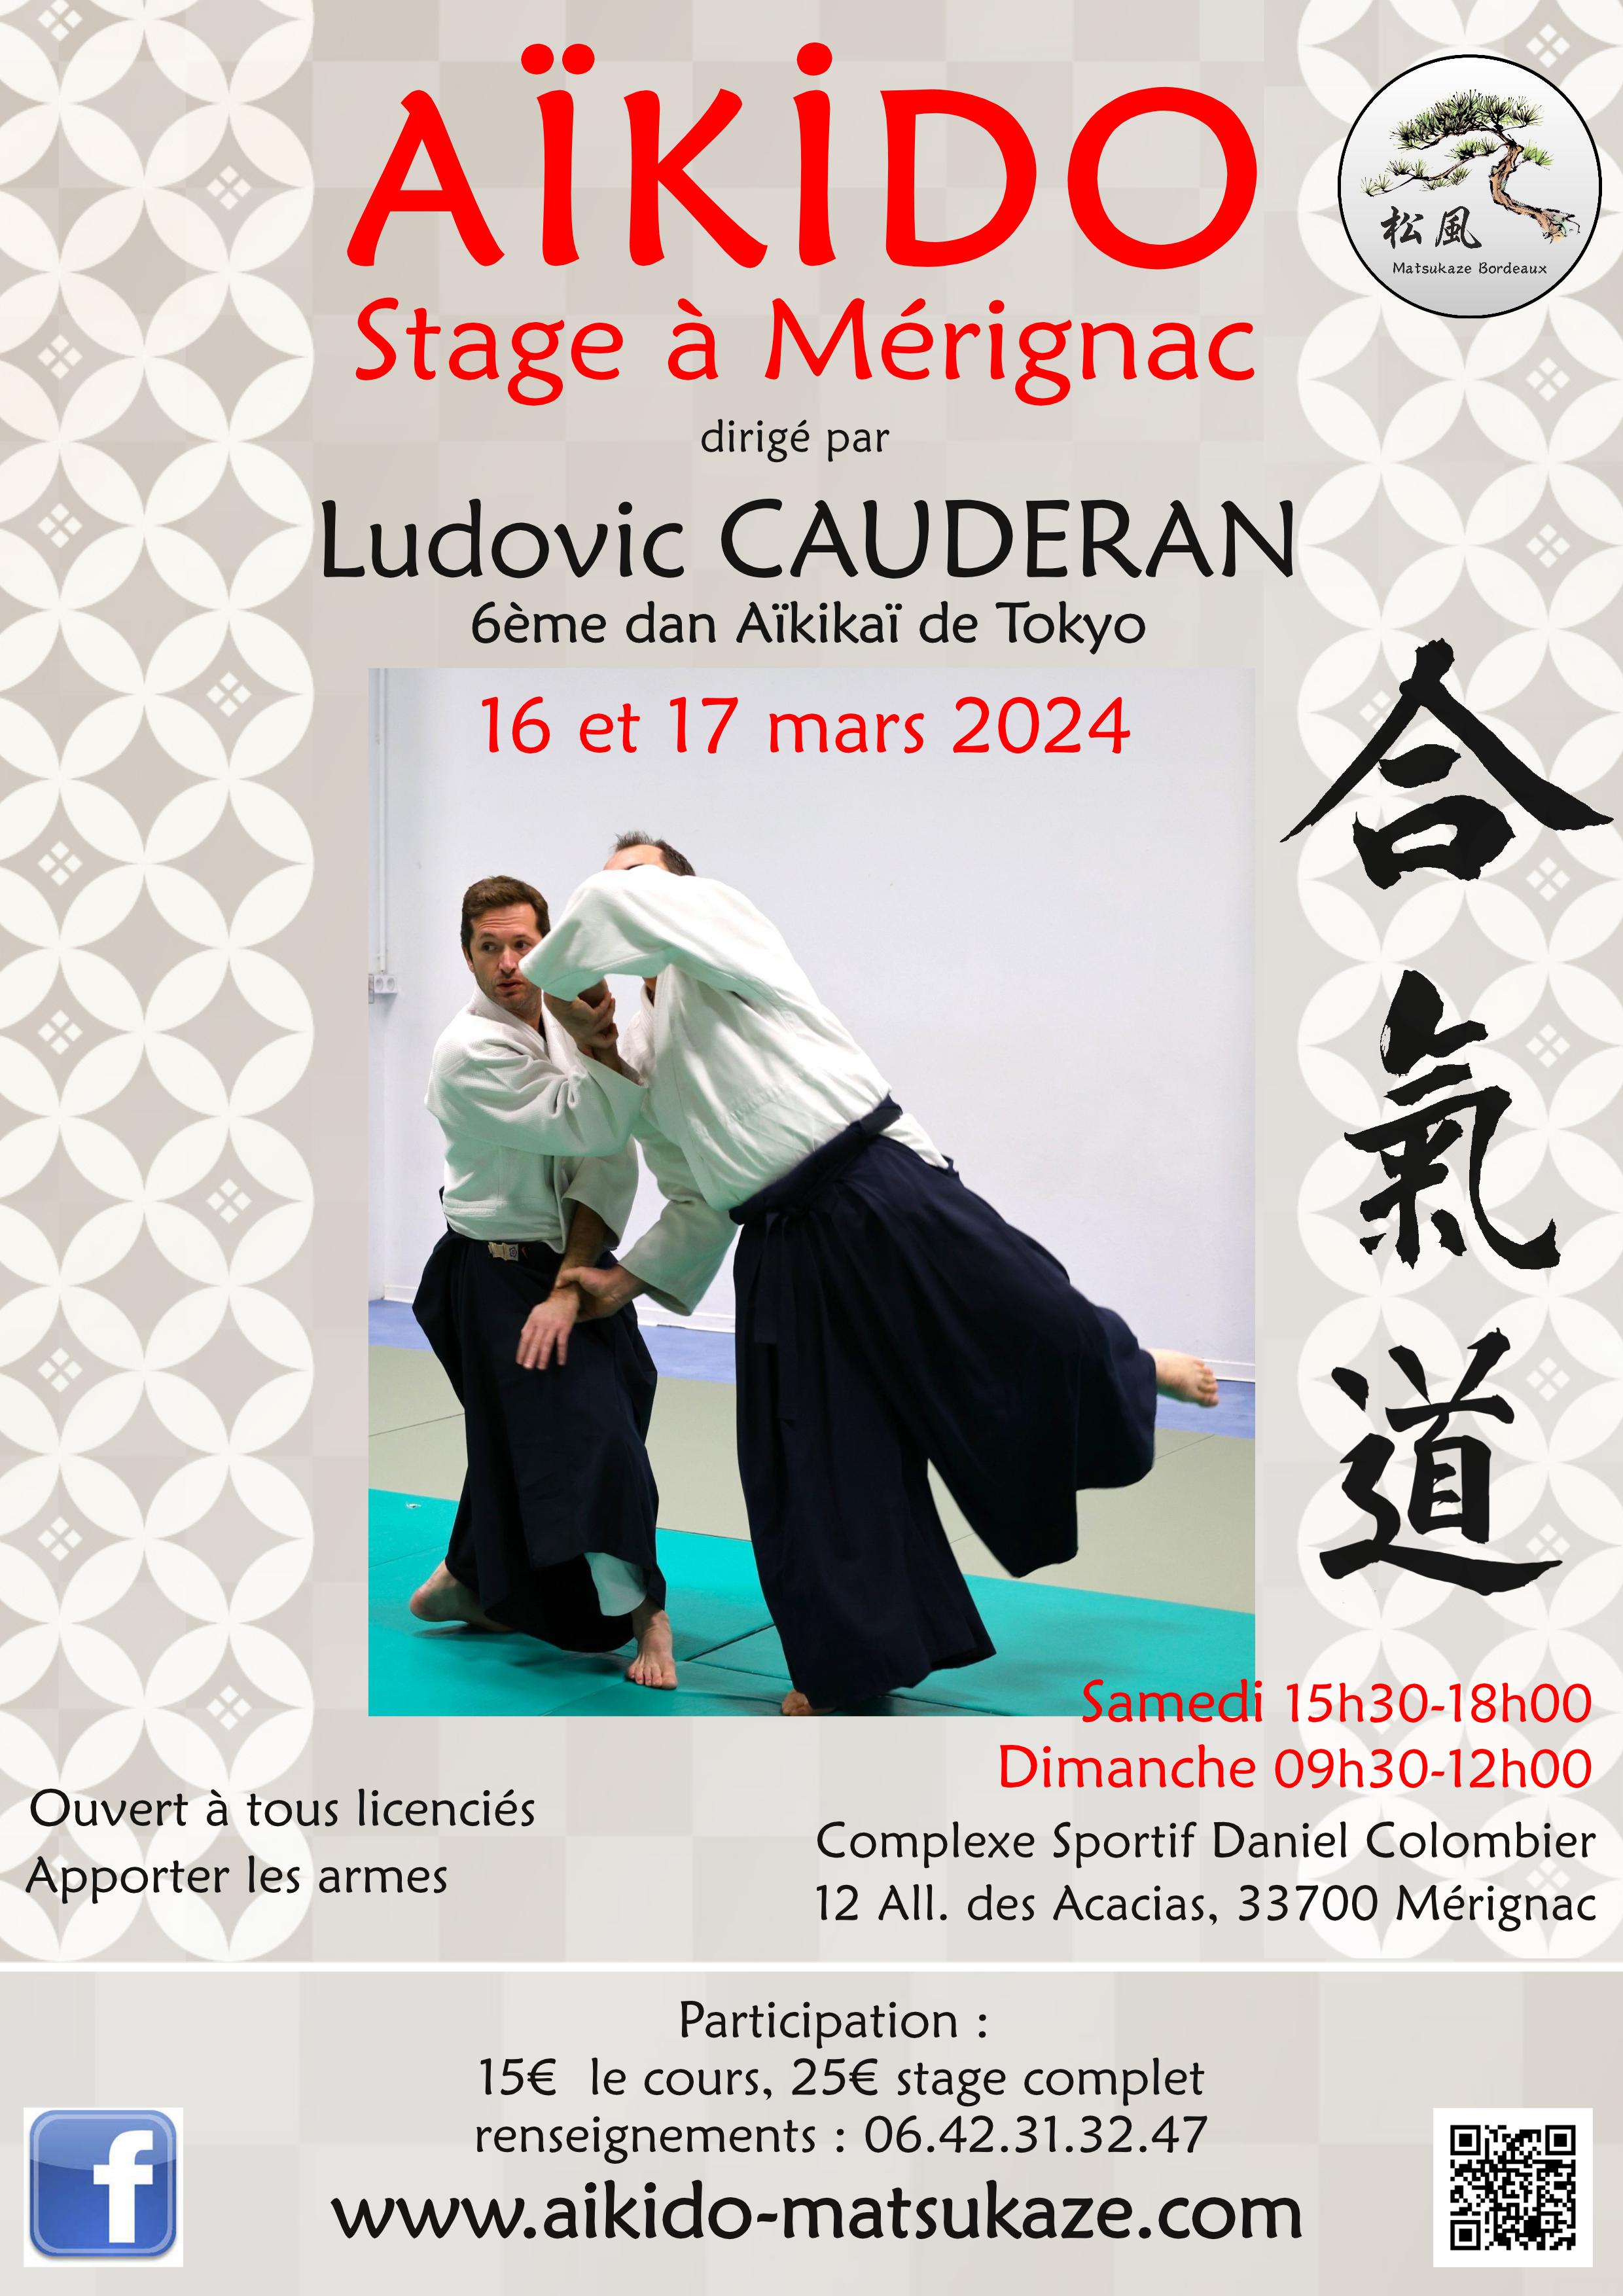 Affiche du Stage d'Aïkido à Mérignac animé par Ludovic Cauderan du samedi 16 mars 2024 au dimanche 17 mars 2024